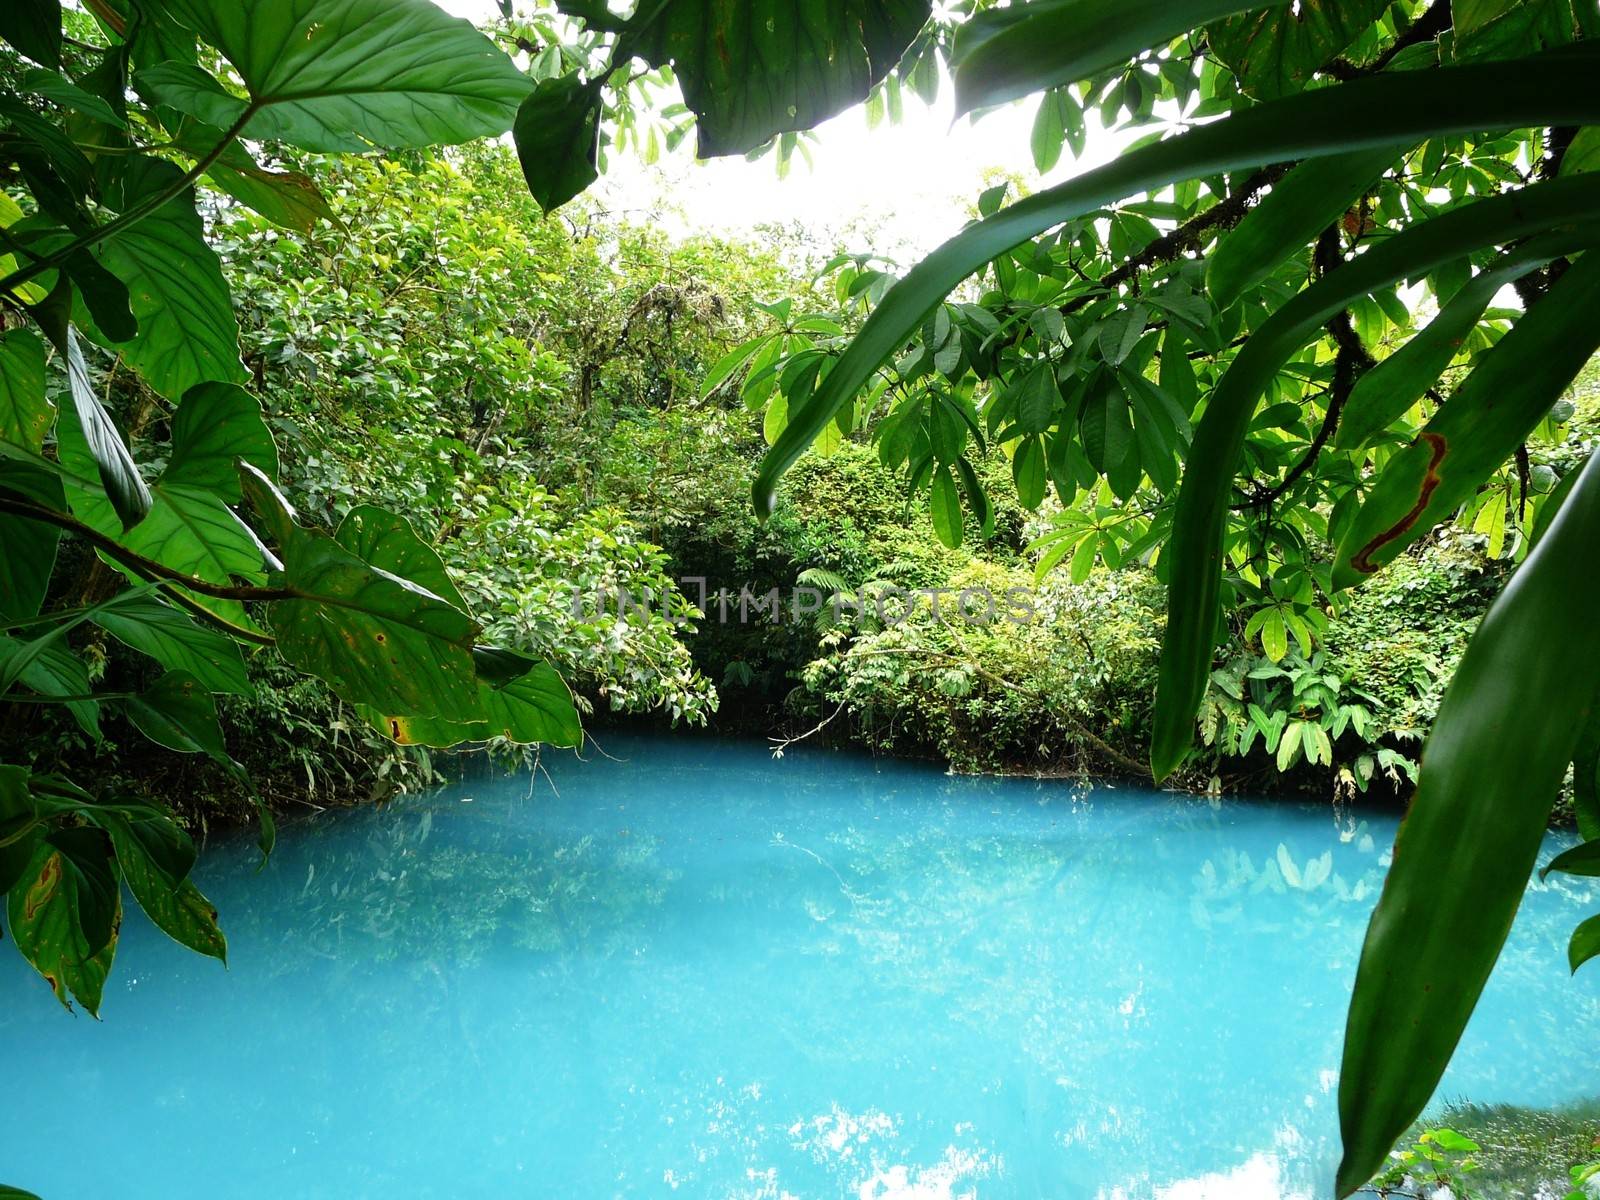 Incredible blue lagoon in Costa Rica